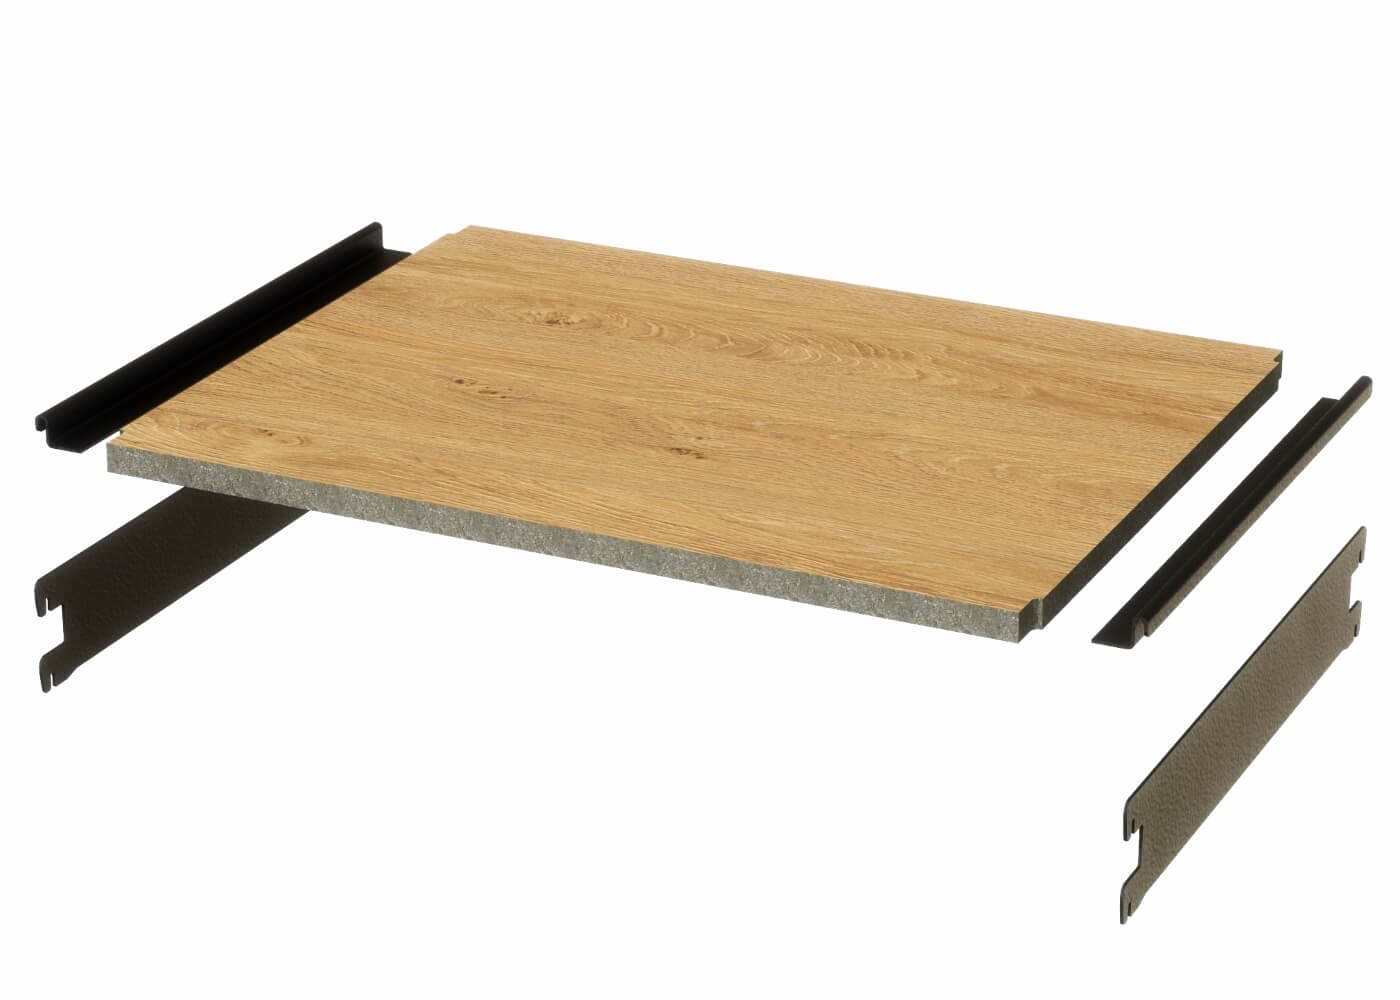 Holzfachboden HEAVY ST in Eiche für das Ladenbau Regalsystem ELEGANCE - Set ohne Verstärkungsprofile (extra) HB